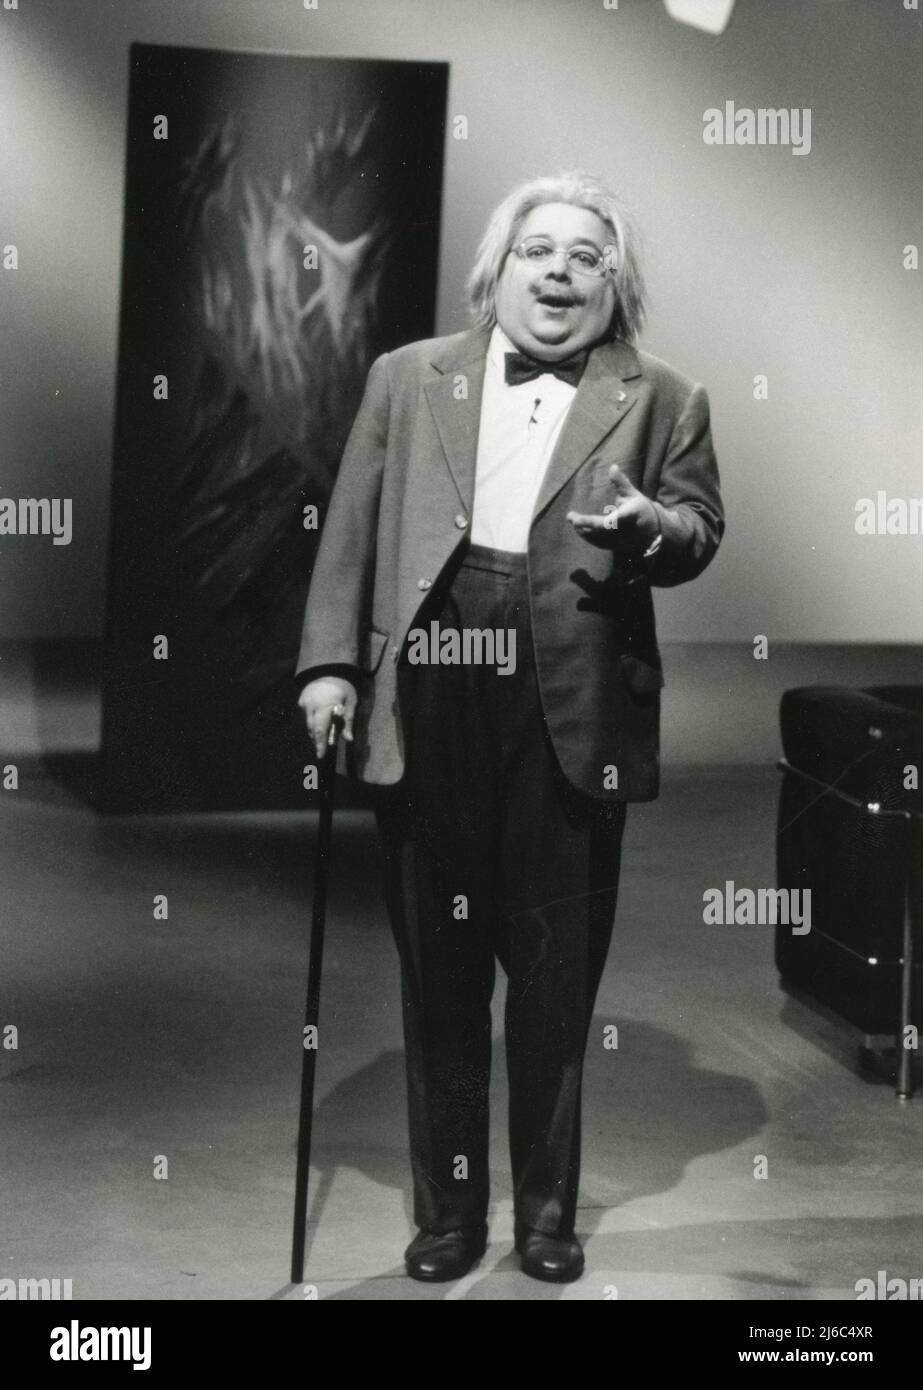 Der deutsche Schauspieler, Komiker und TV-Moderator Dirk Bach in der Show als Professor Maus, 1992 Stockfoto